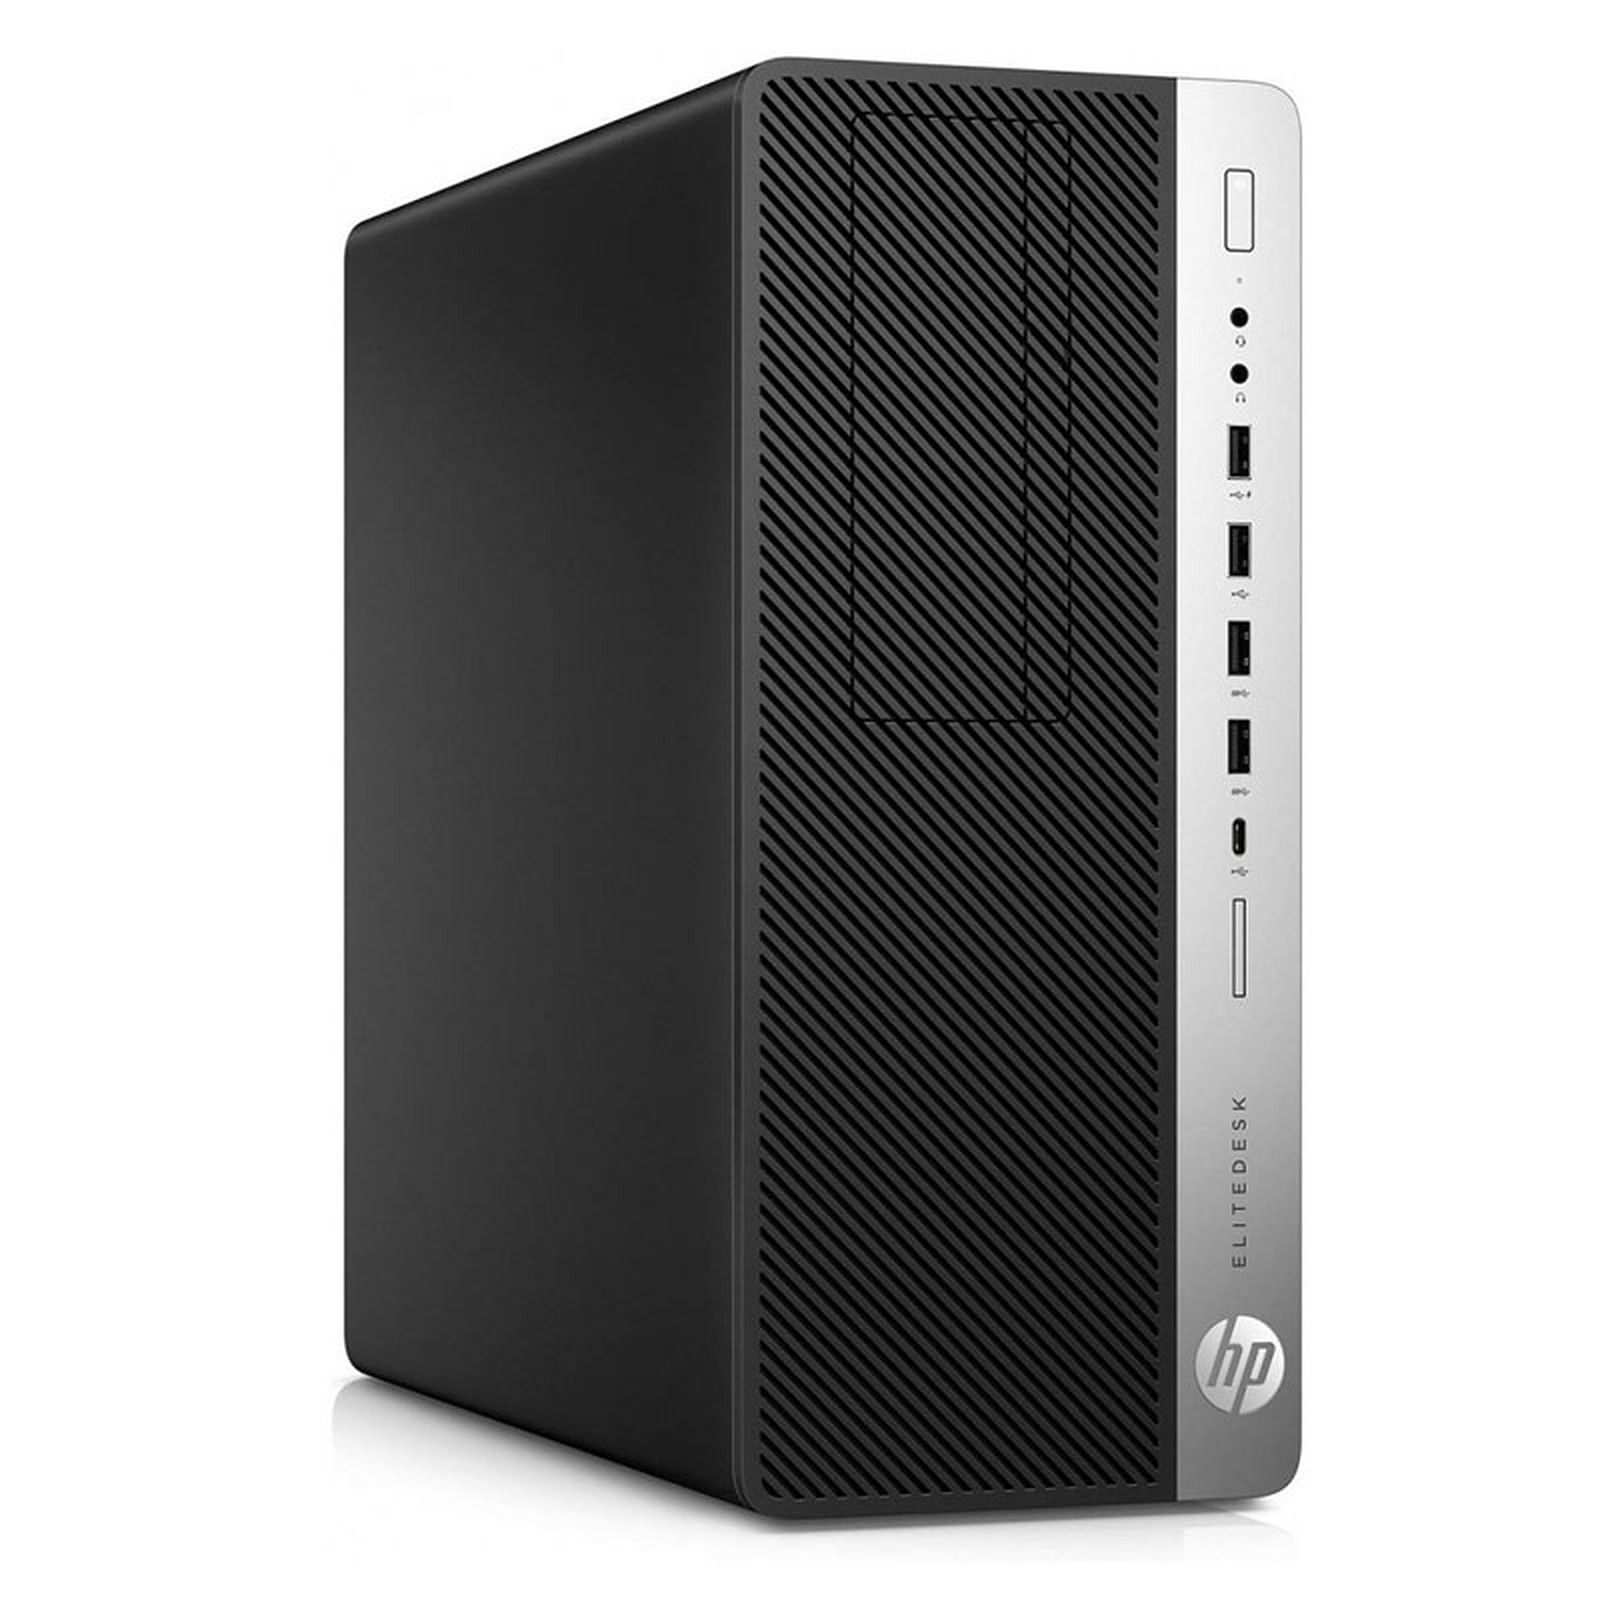 HP EliteDesk 800 G3 TWR (I56582) · Reconditionne - PC de bureau reconditionne HP